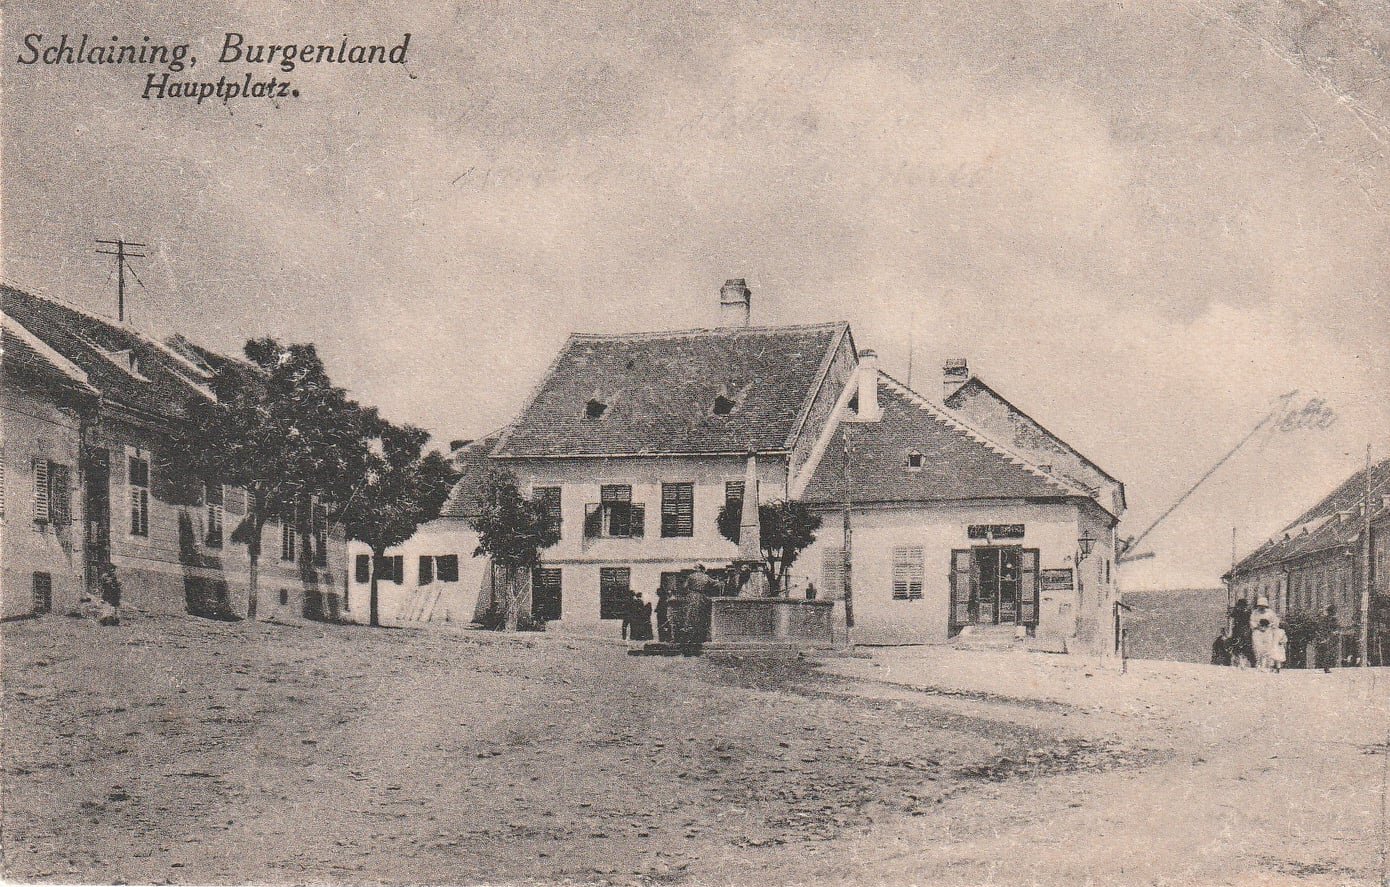 Best of Burgenland - Old Stadtschlaining